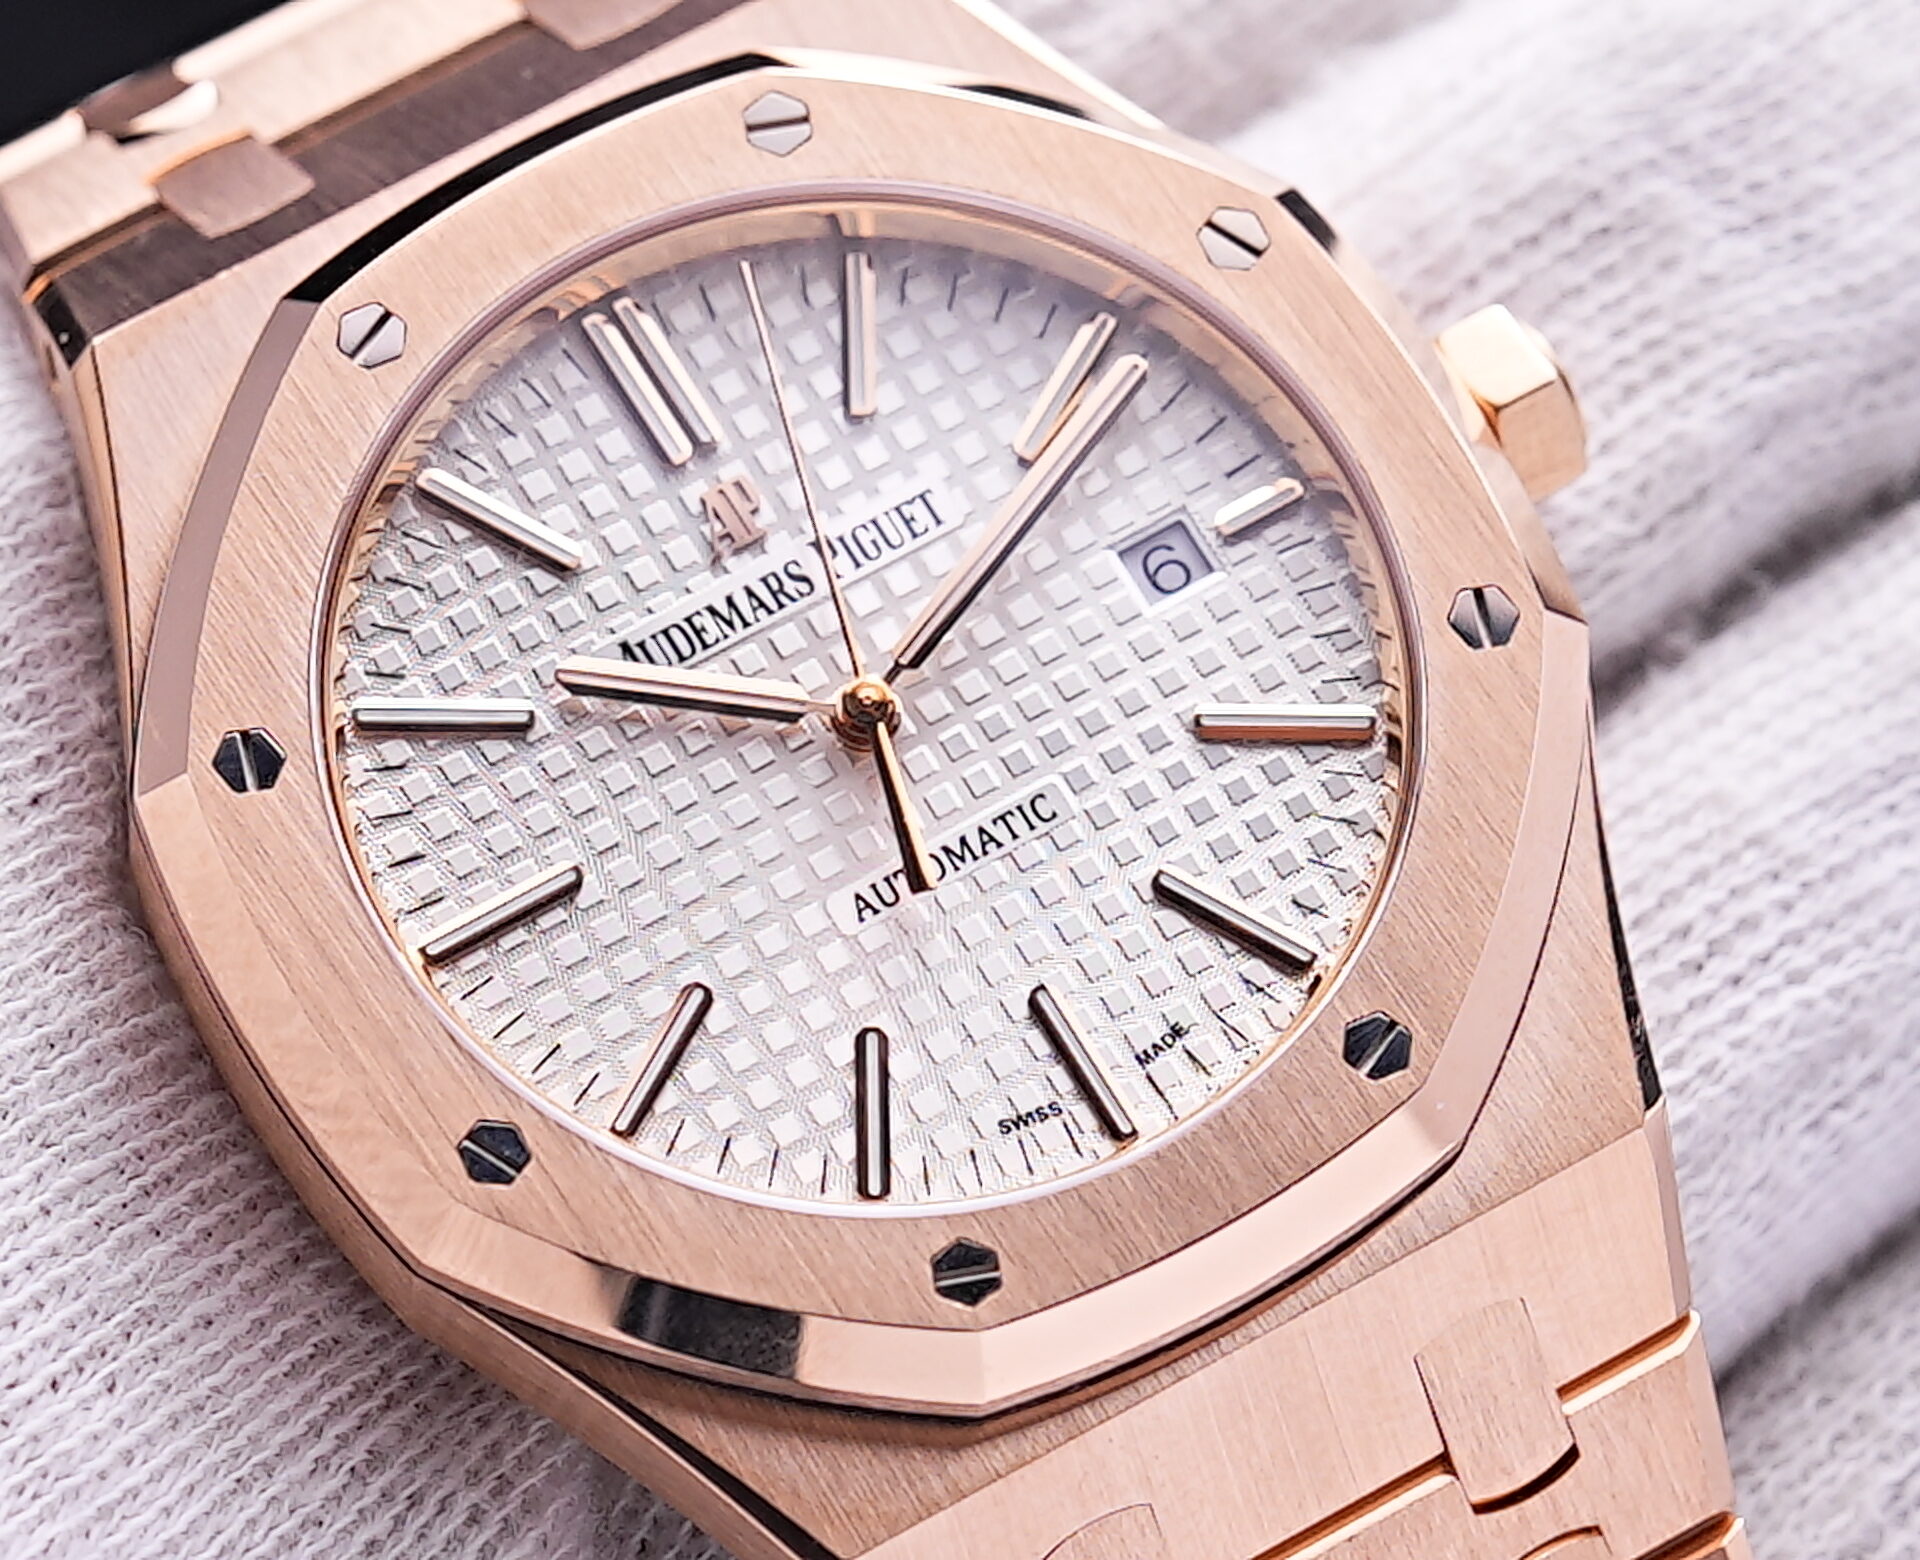 Audemars Piguet Royal Oak 41mm Pink Gold Watch 15400OR.OO.1220OR.02